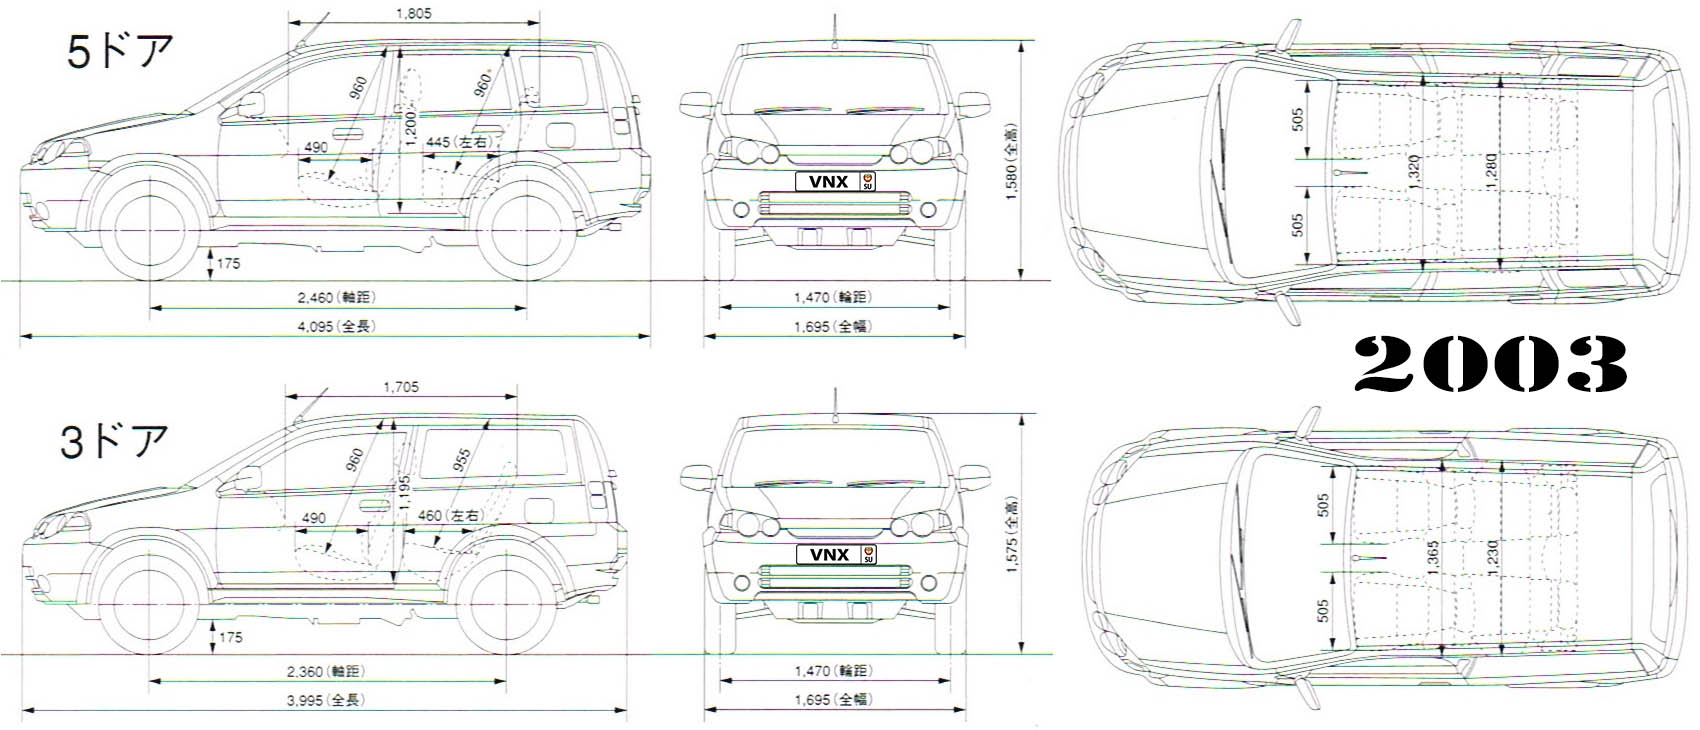 Габаритные размеры Хонда ШР-В (dimensions Honda HR-V)